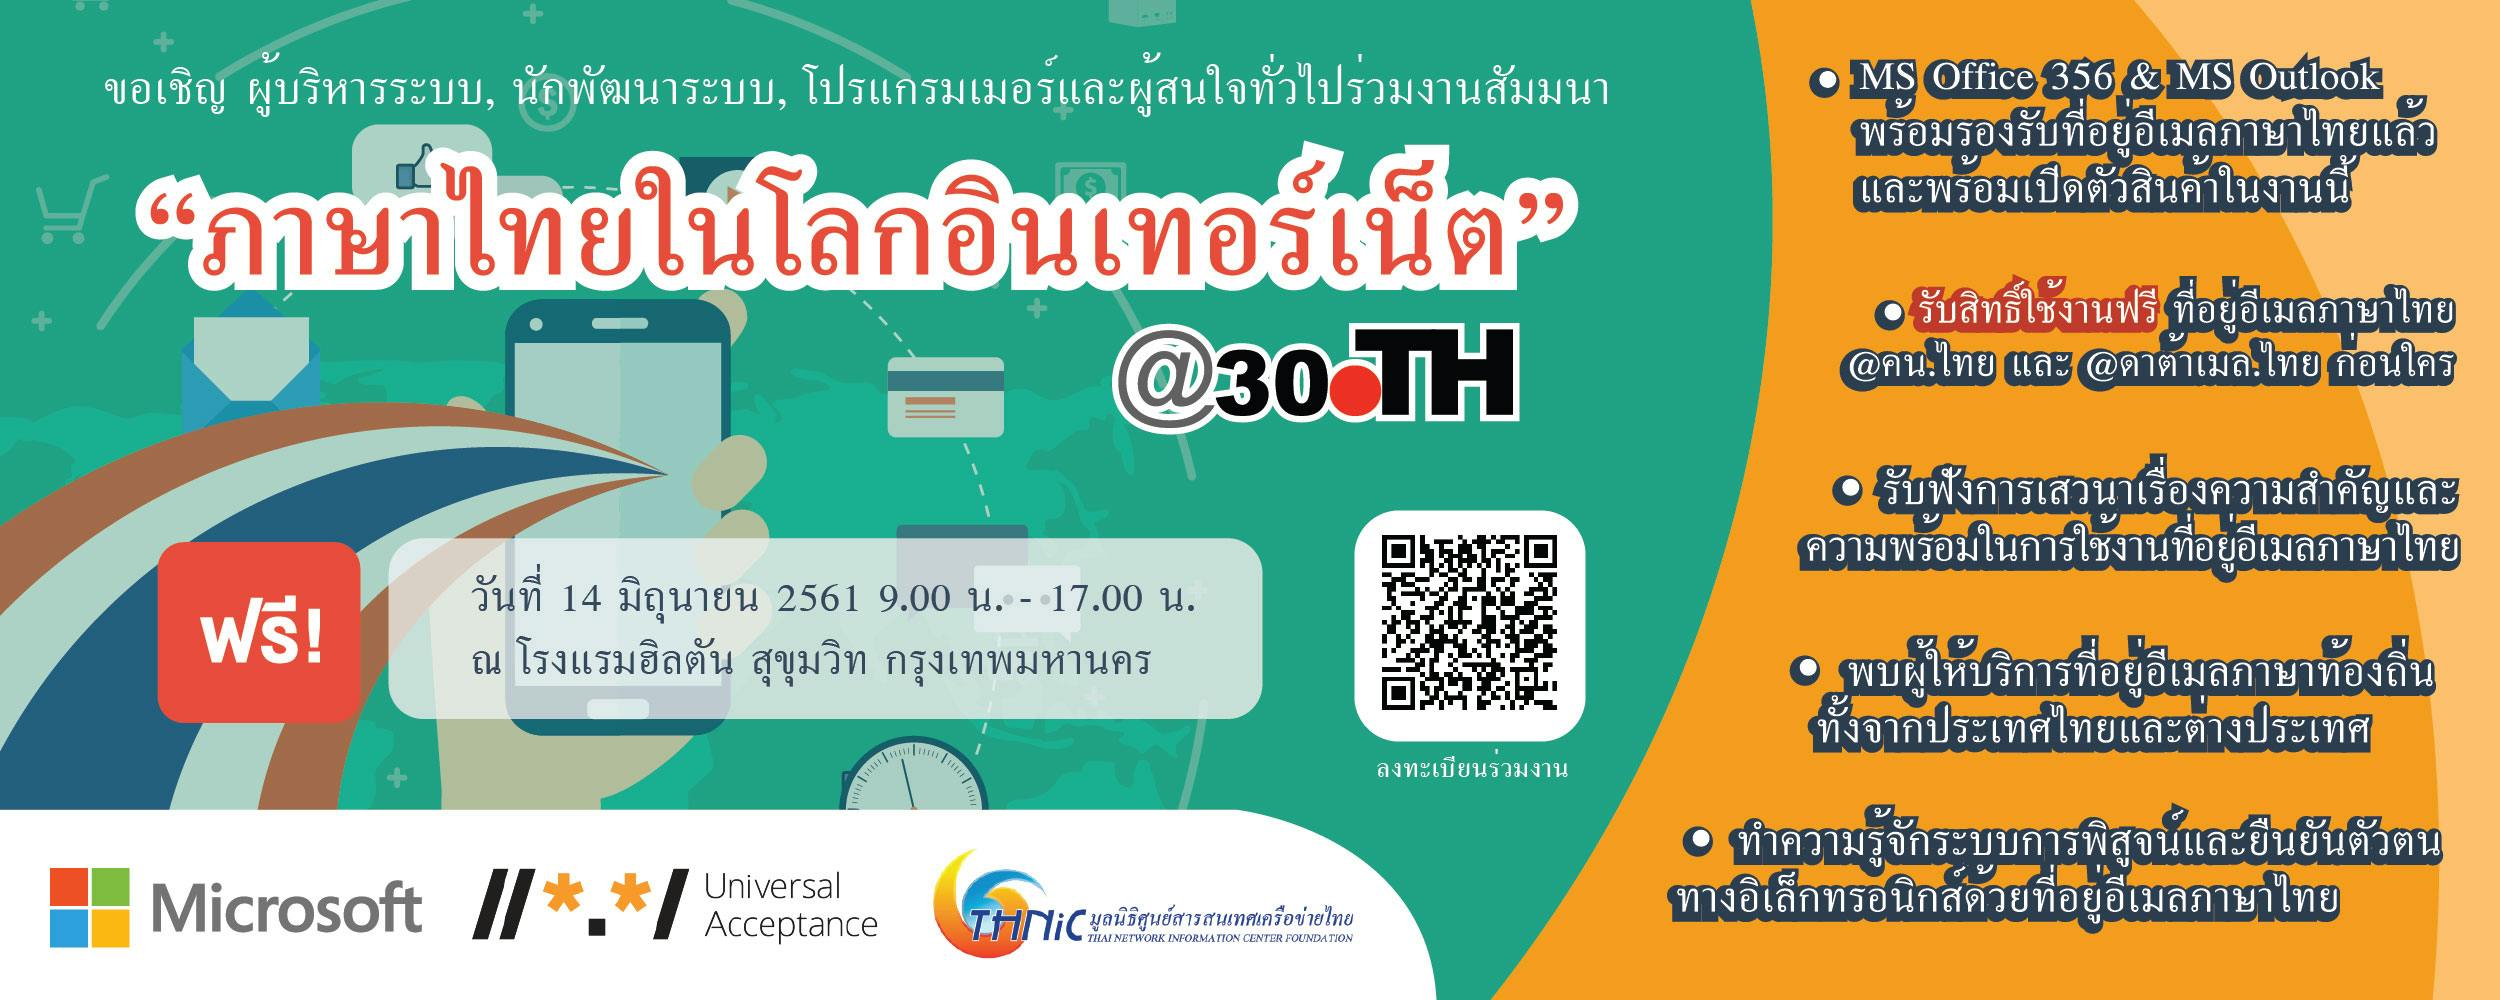 Cover Image for ขอเชิญสมาชิกสมาคมผู้ดูแลเว็บไทยเข้าร่วมงานสัมมนา “ภาษาไทยในโลกอินเทอร์เน็ต” (สัมมนาฟรี)